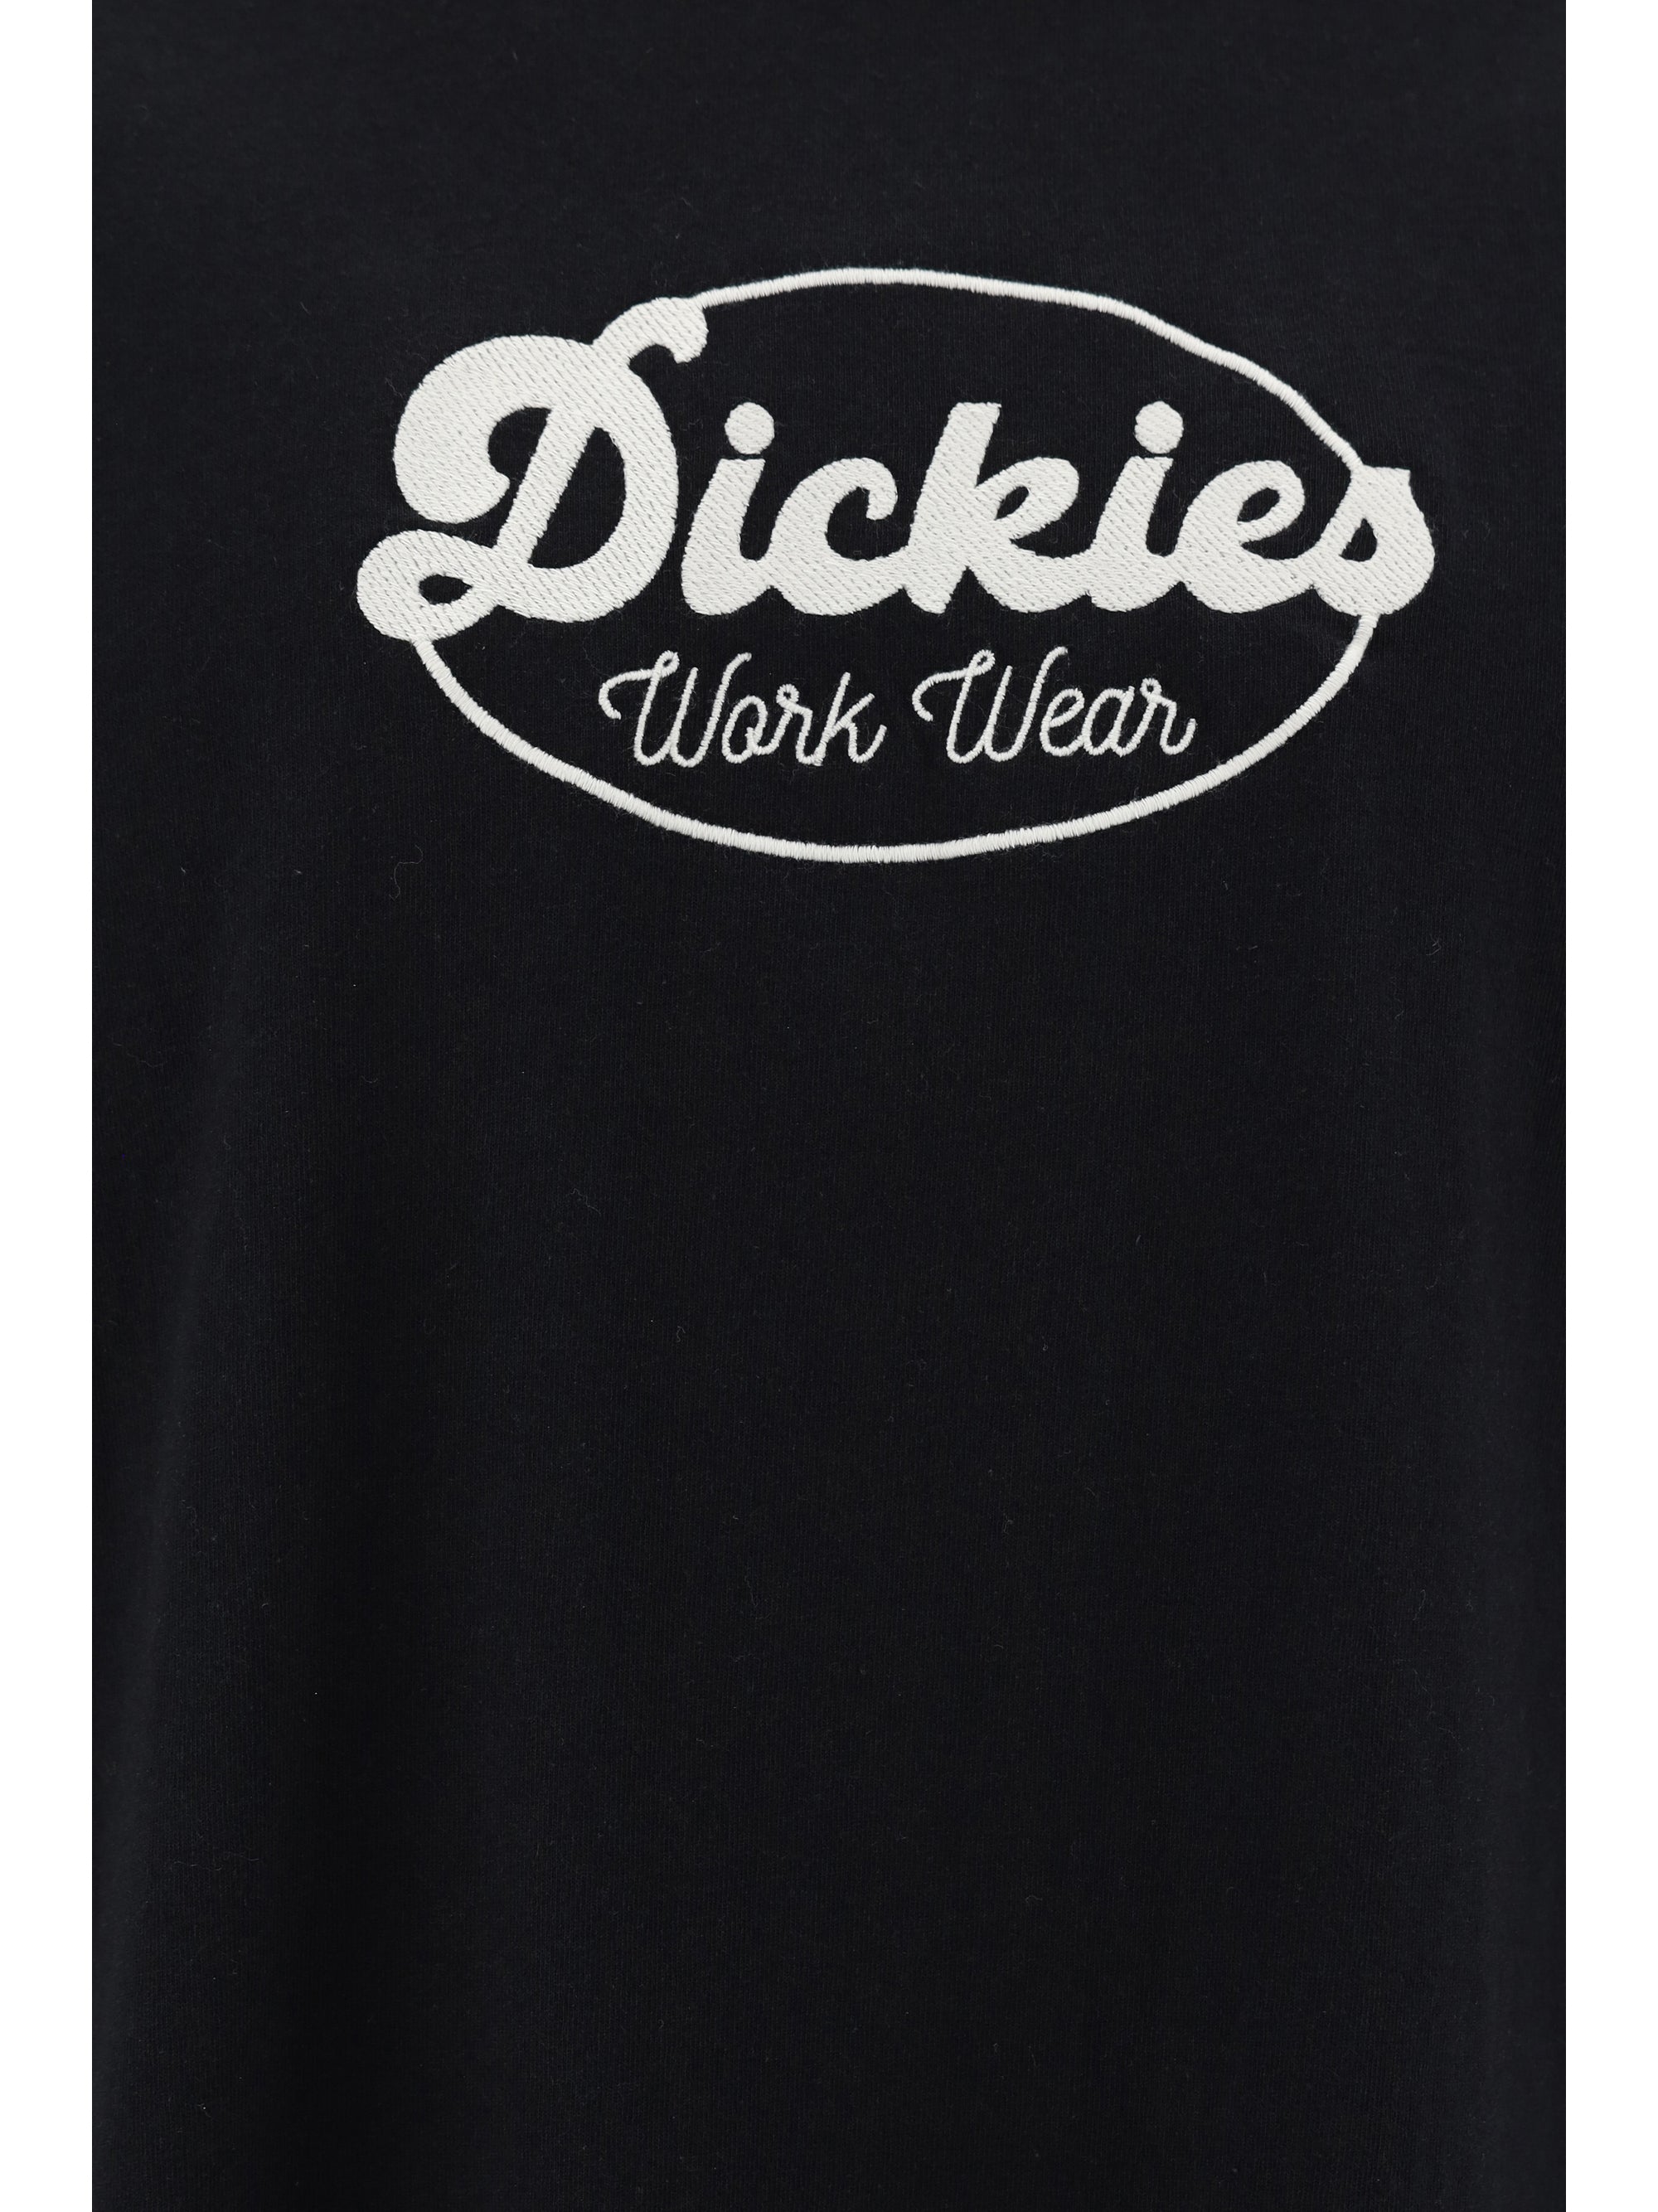 DICKIES GRIDLEY T-SHIRT DICKIES CLOTHING BLACK